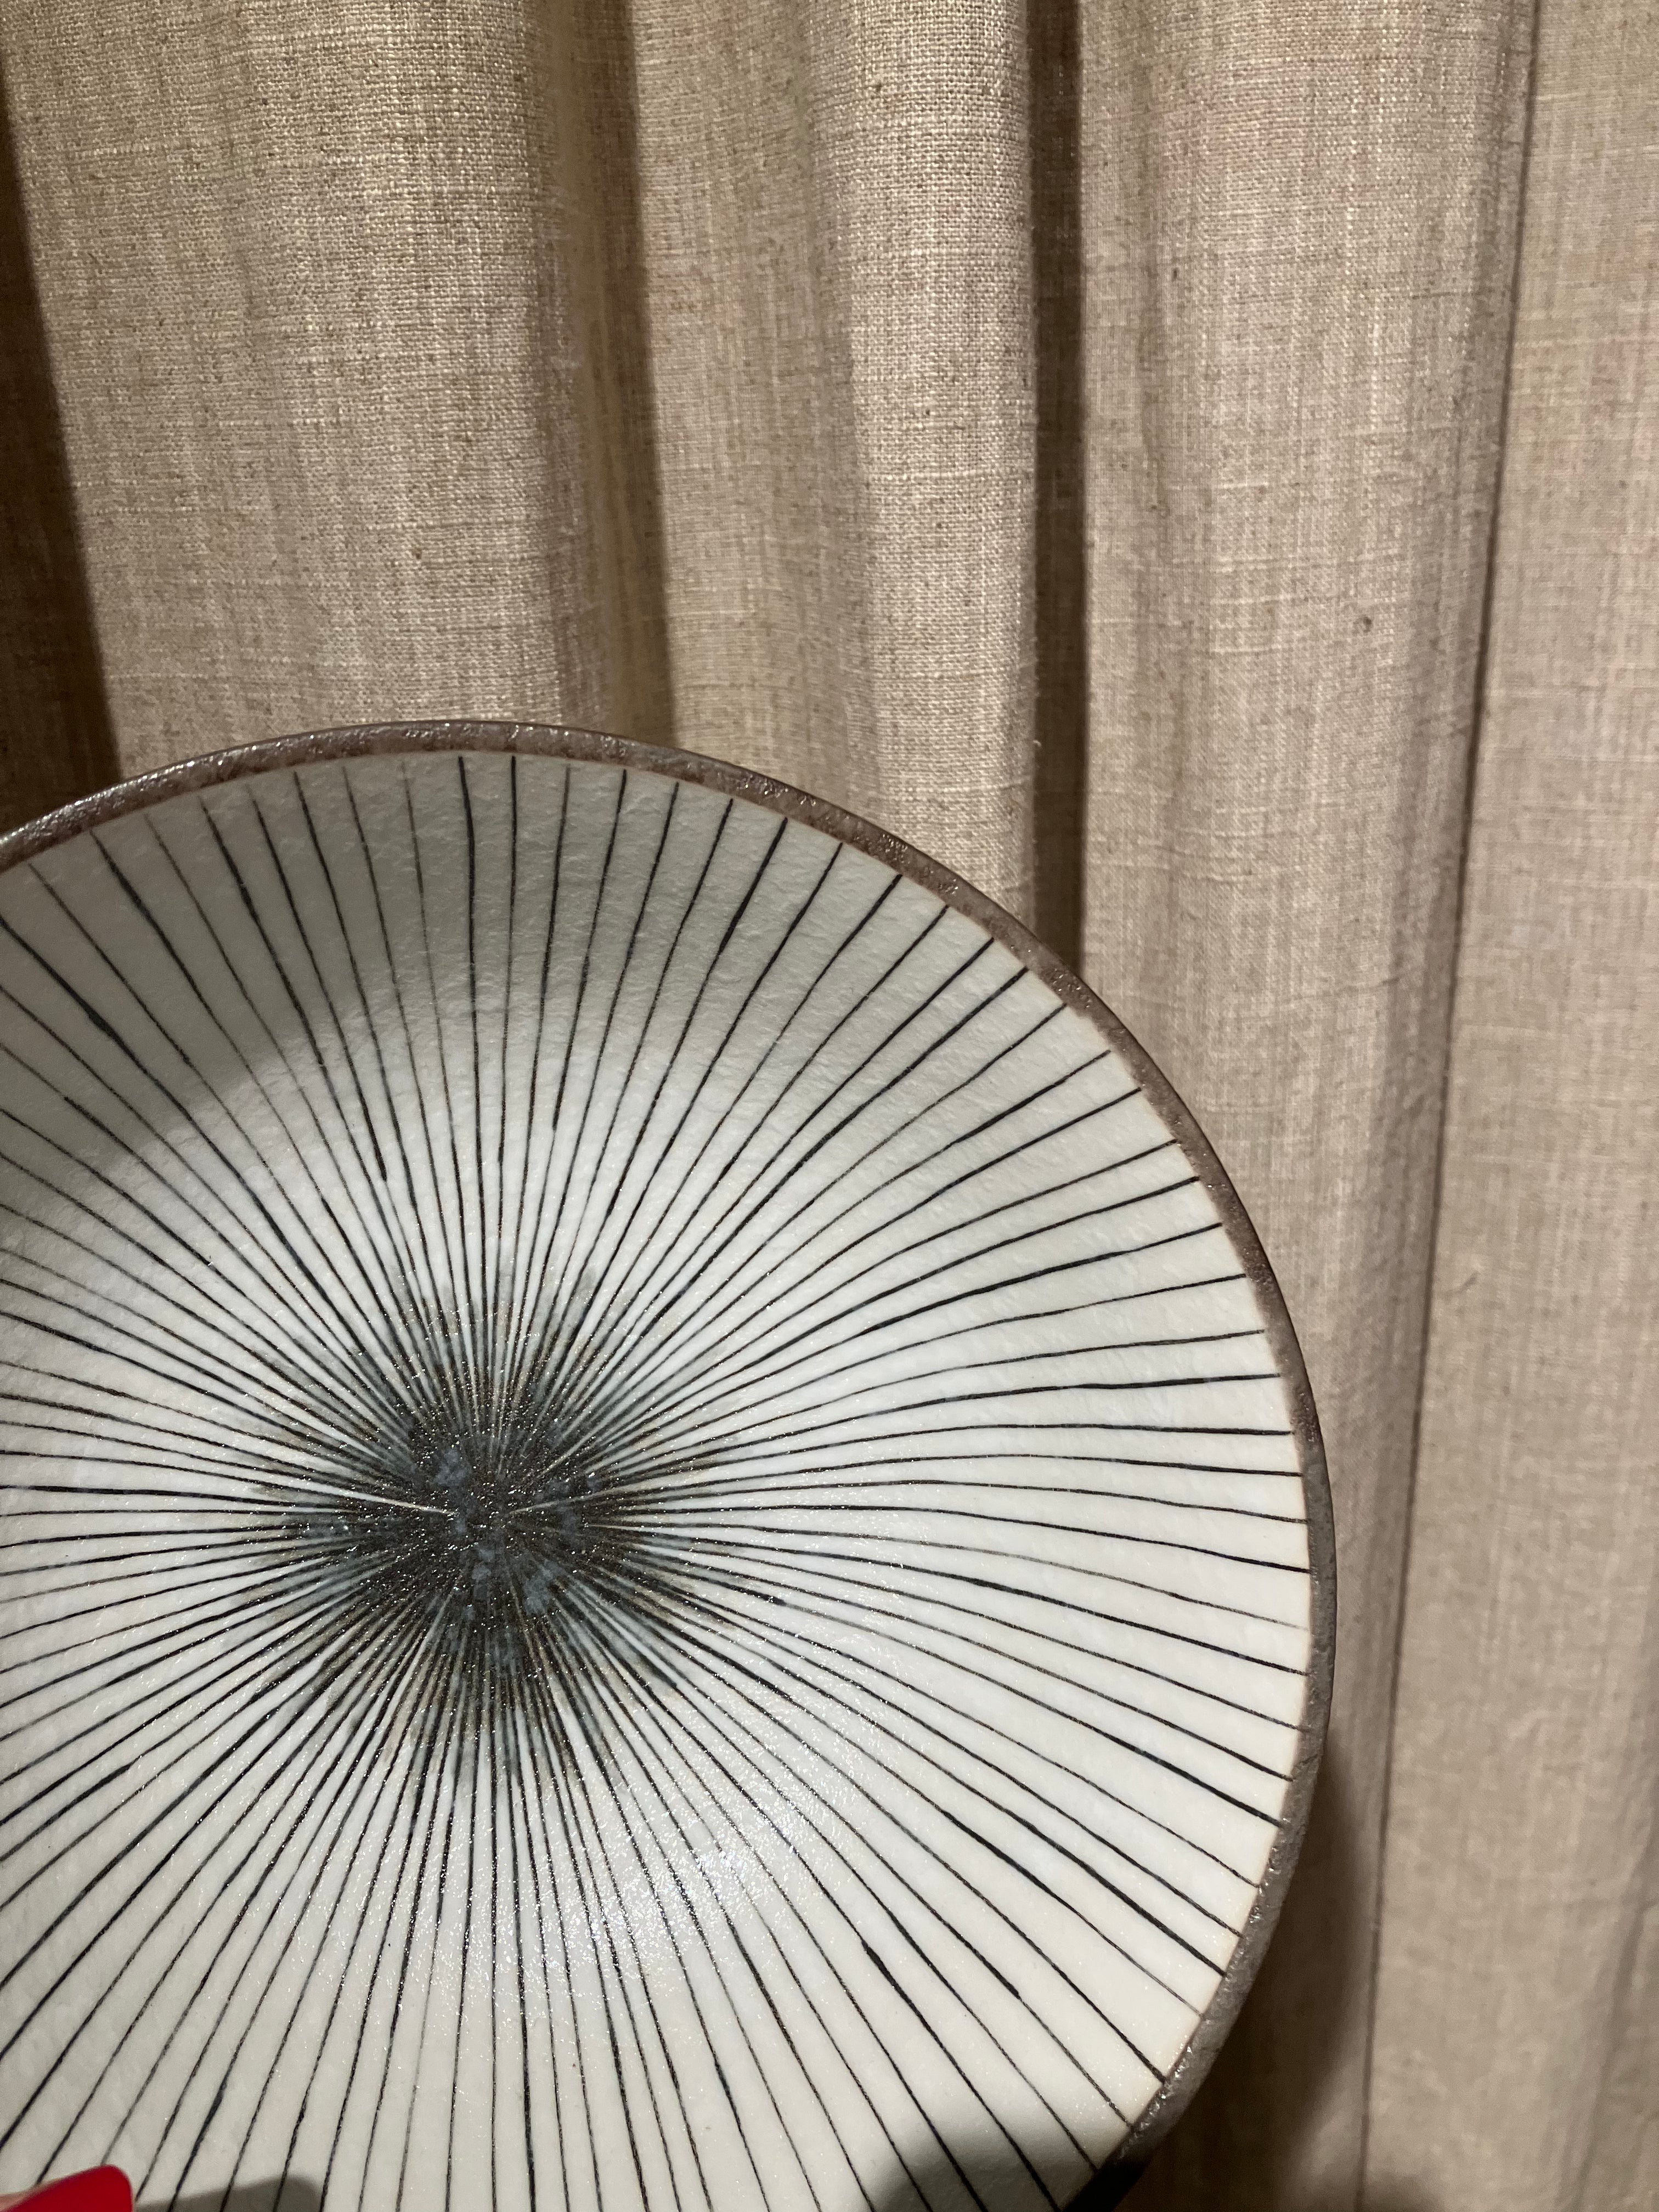 Ramen bowl grey/brown with stripes